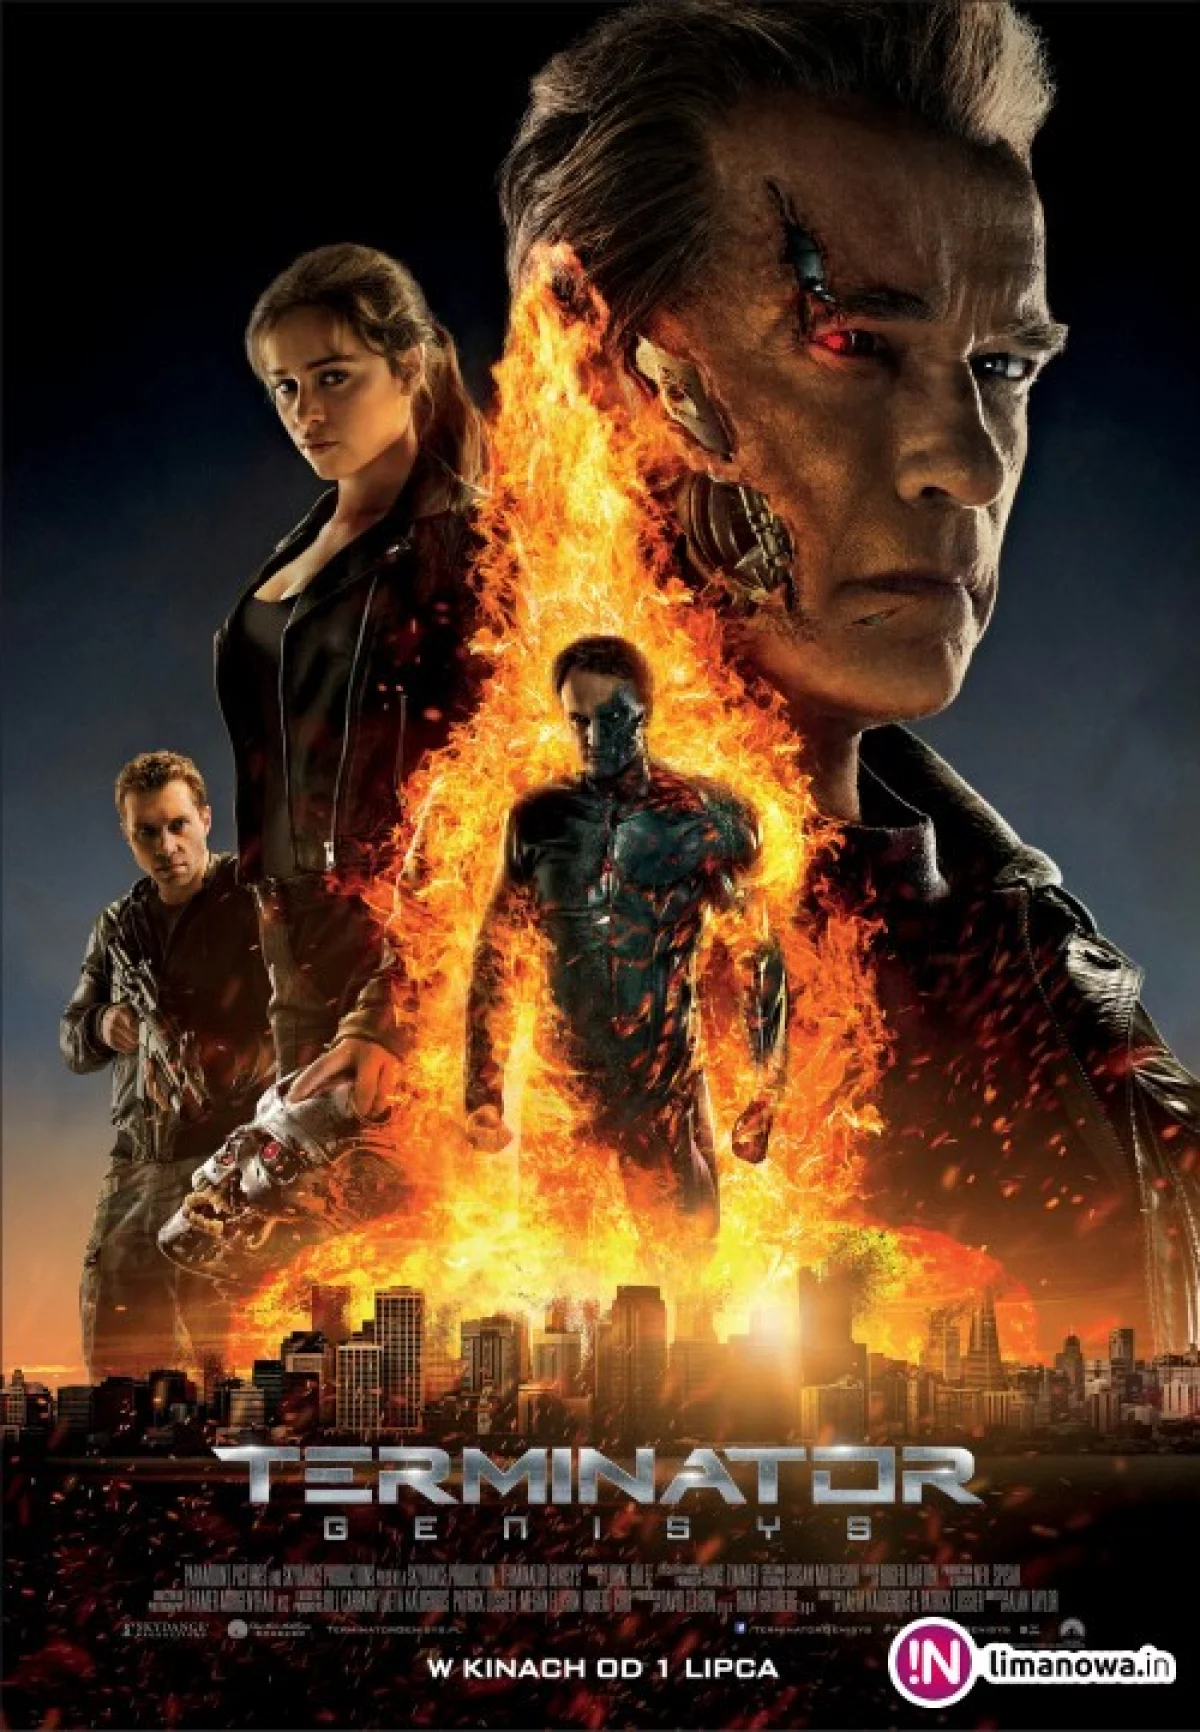 Premiera w kinie Klaps - „Terminator: Genisys” na ekranie od 1 lipca!